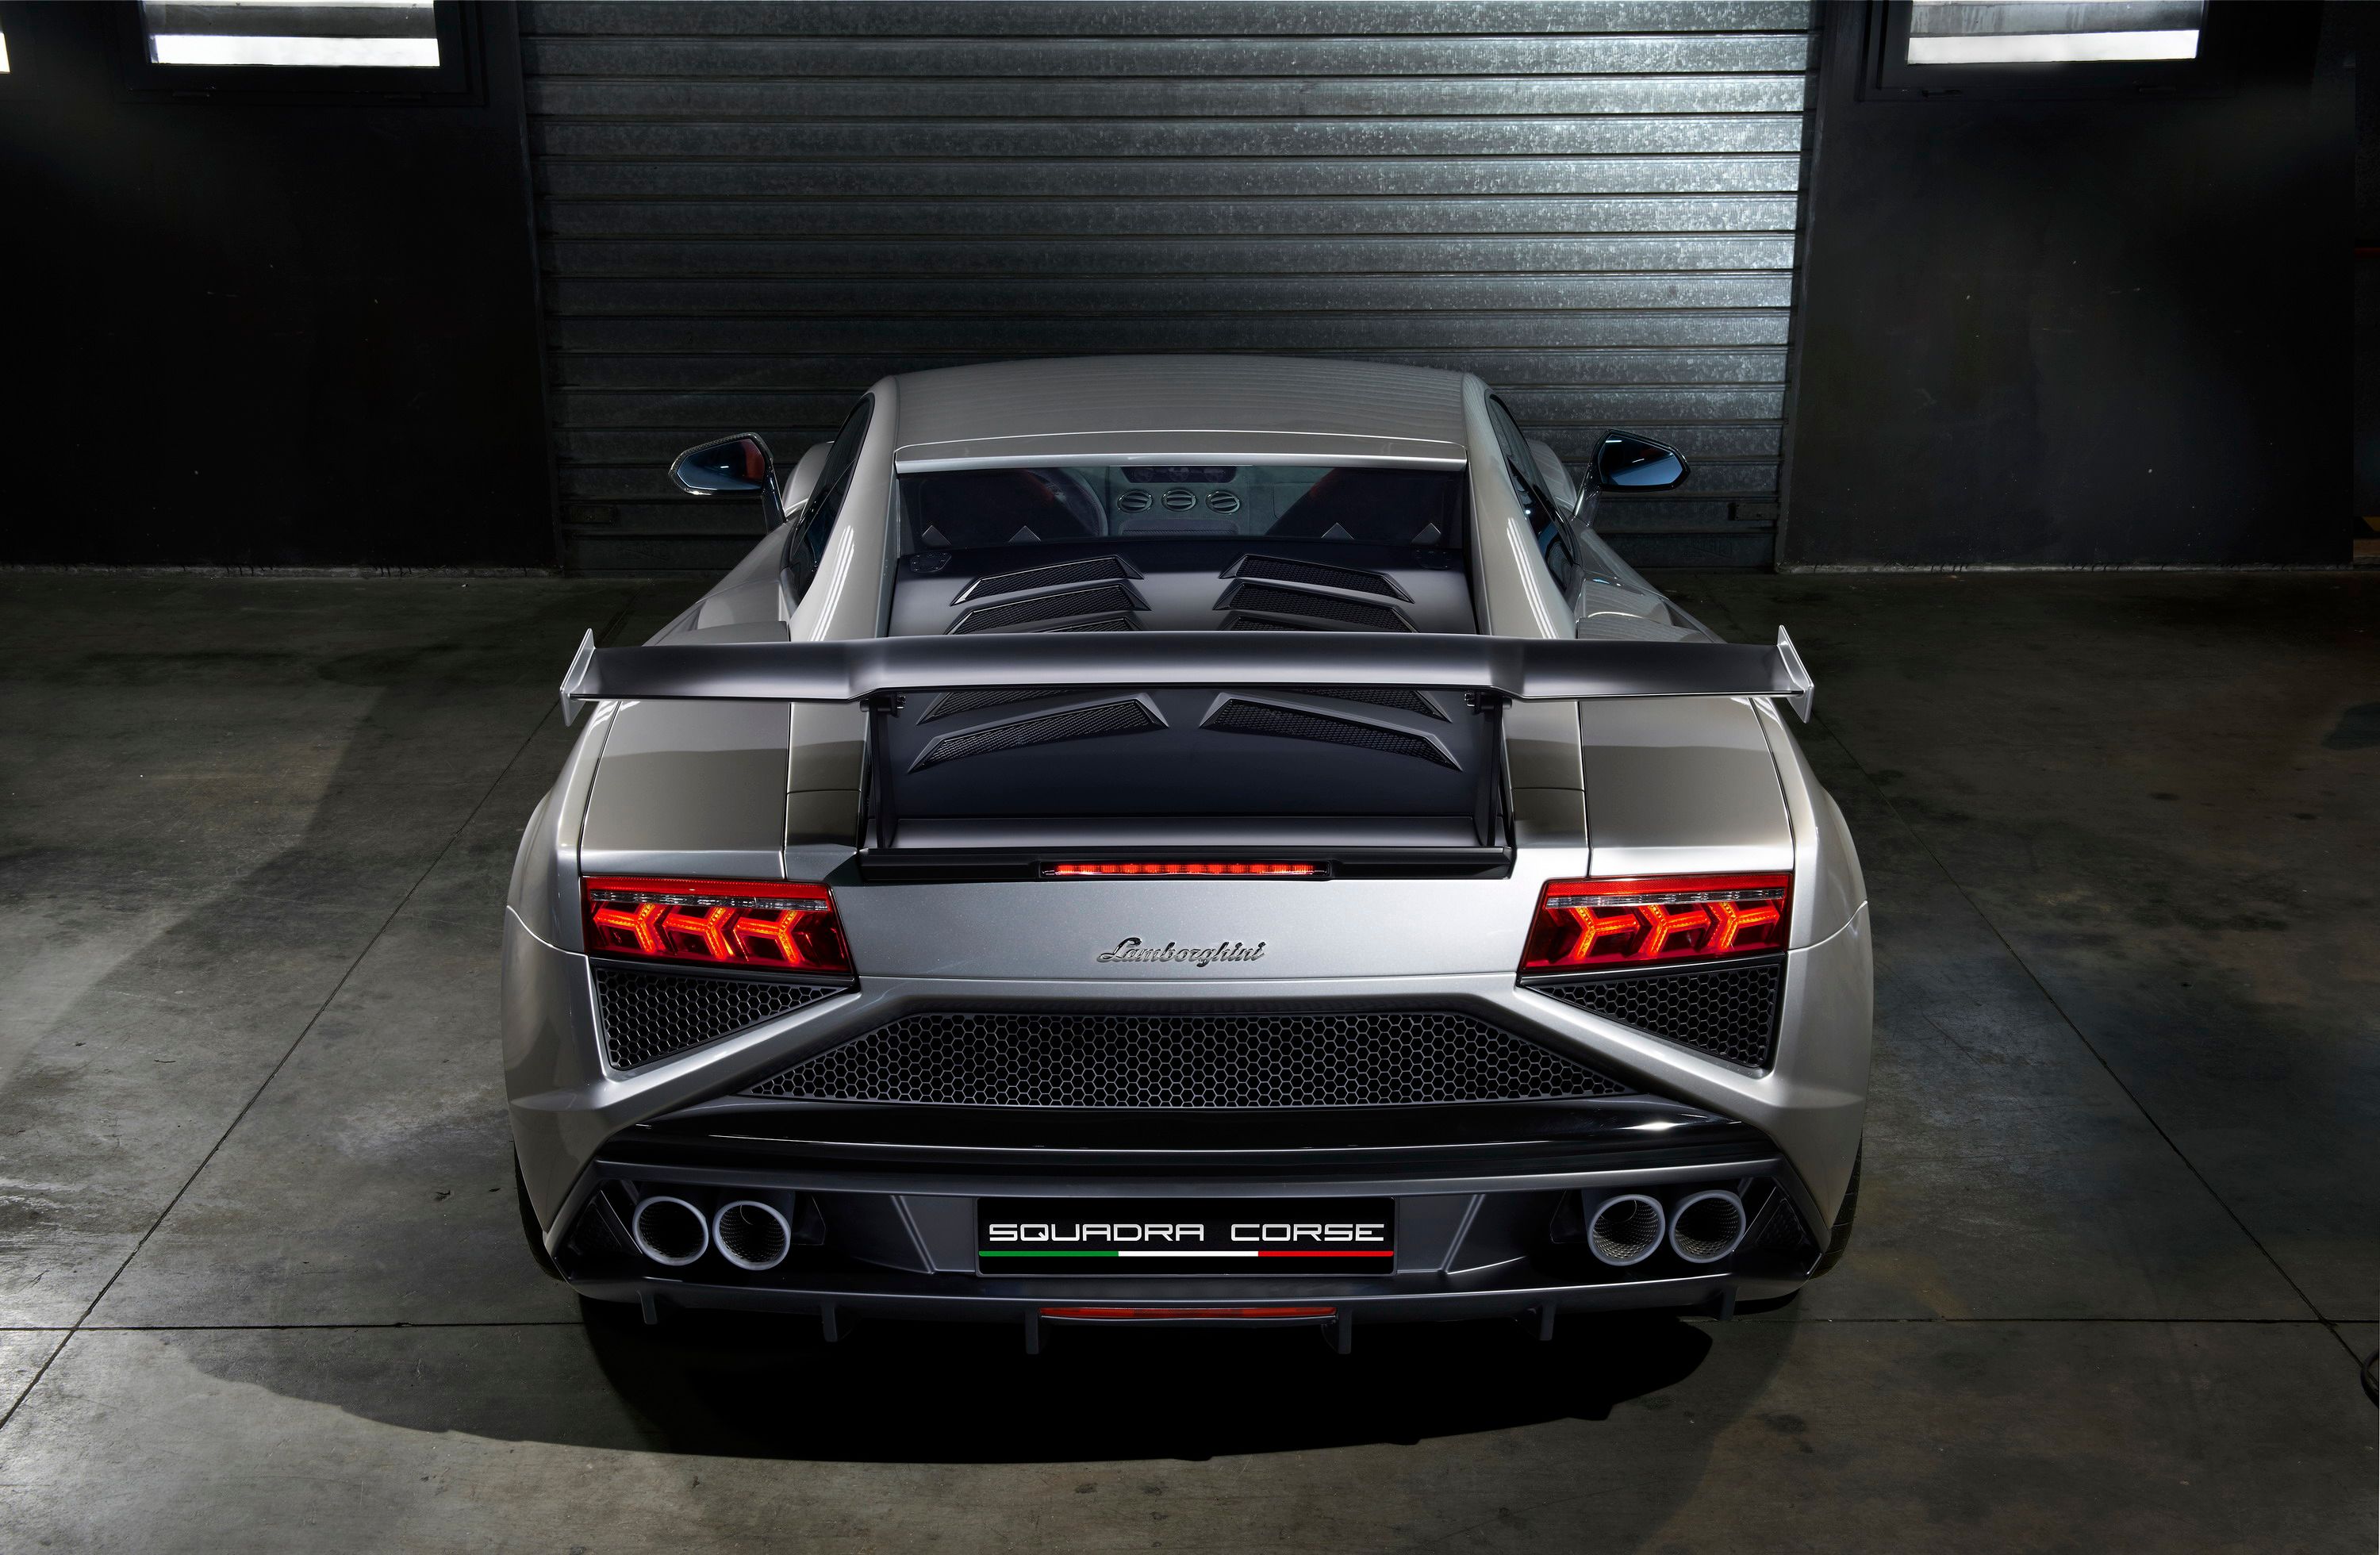 2014 Lamborghini Gallardo LP 570-4 Squadra Corse 